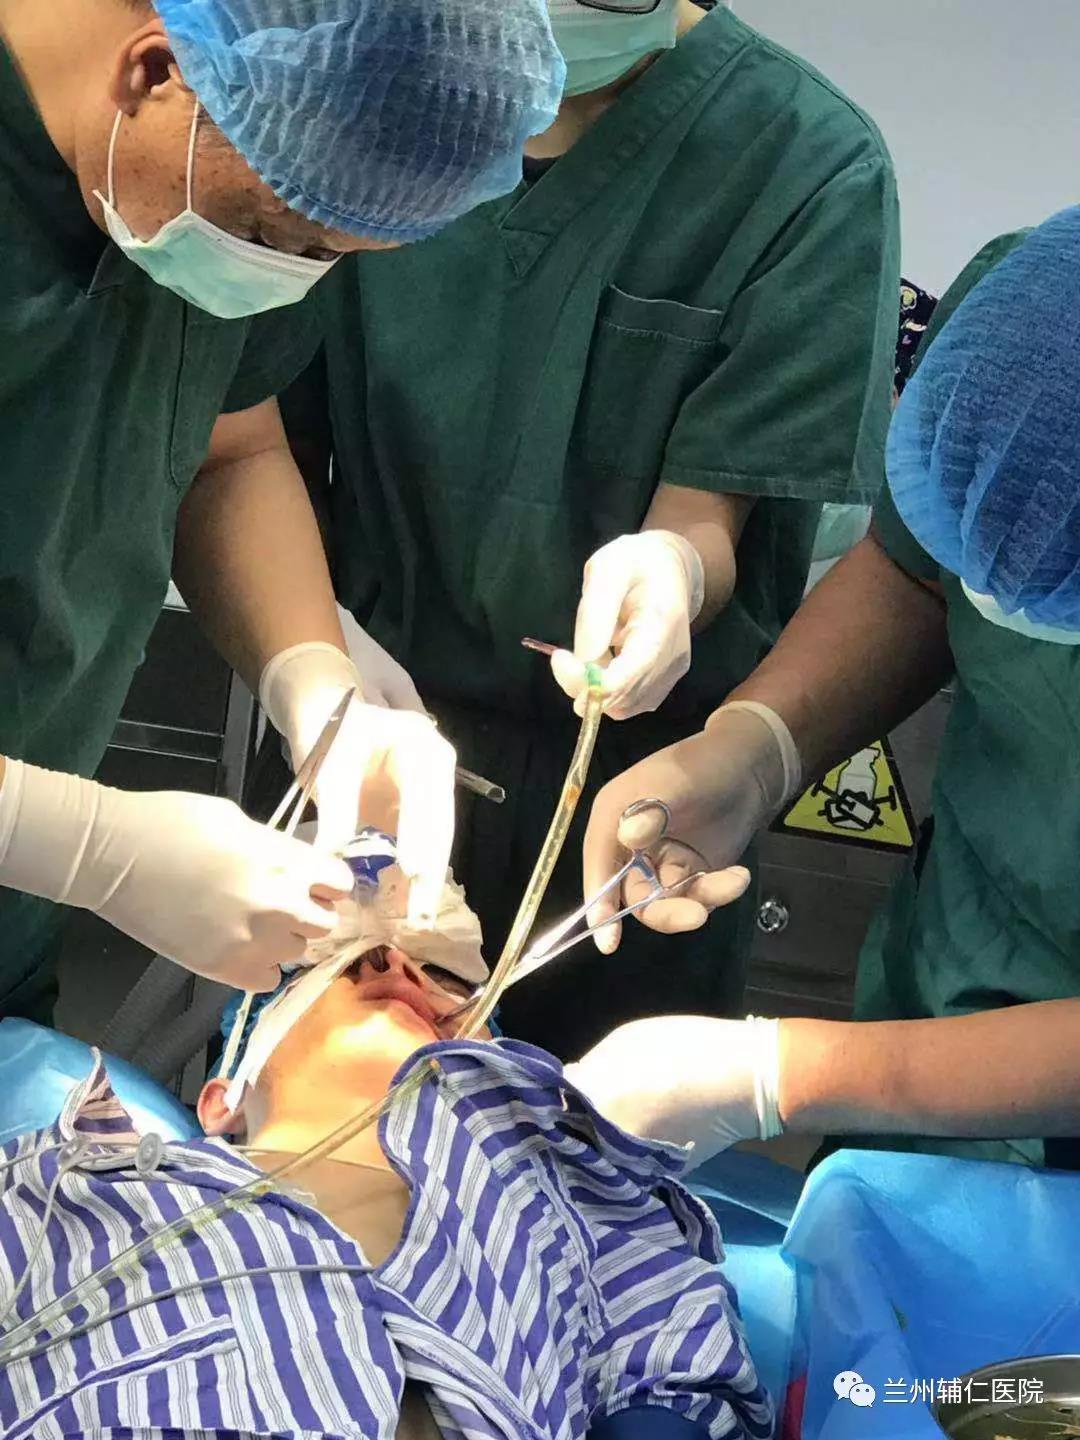 在全麻下,两位专家积极配合,进行下颌骨切开复位内固定术,手术切口